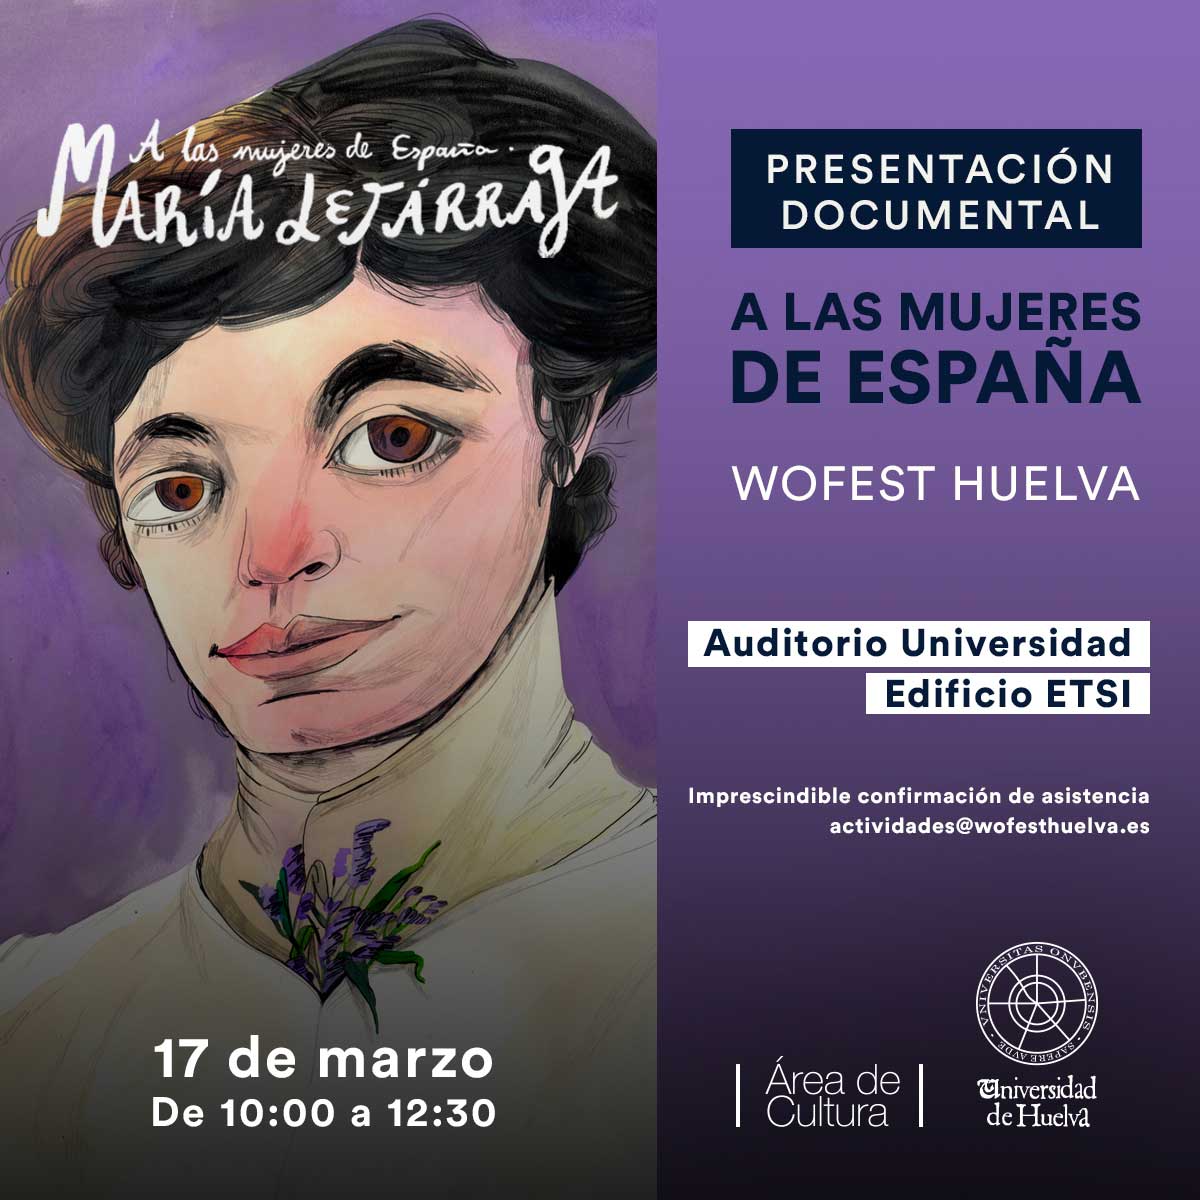 presentacion documental a las mujeres de espana 17 de marzo universidad